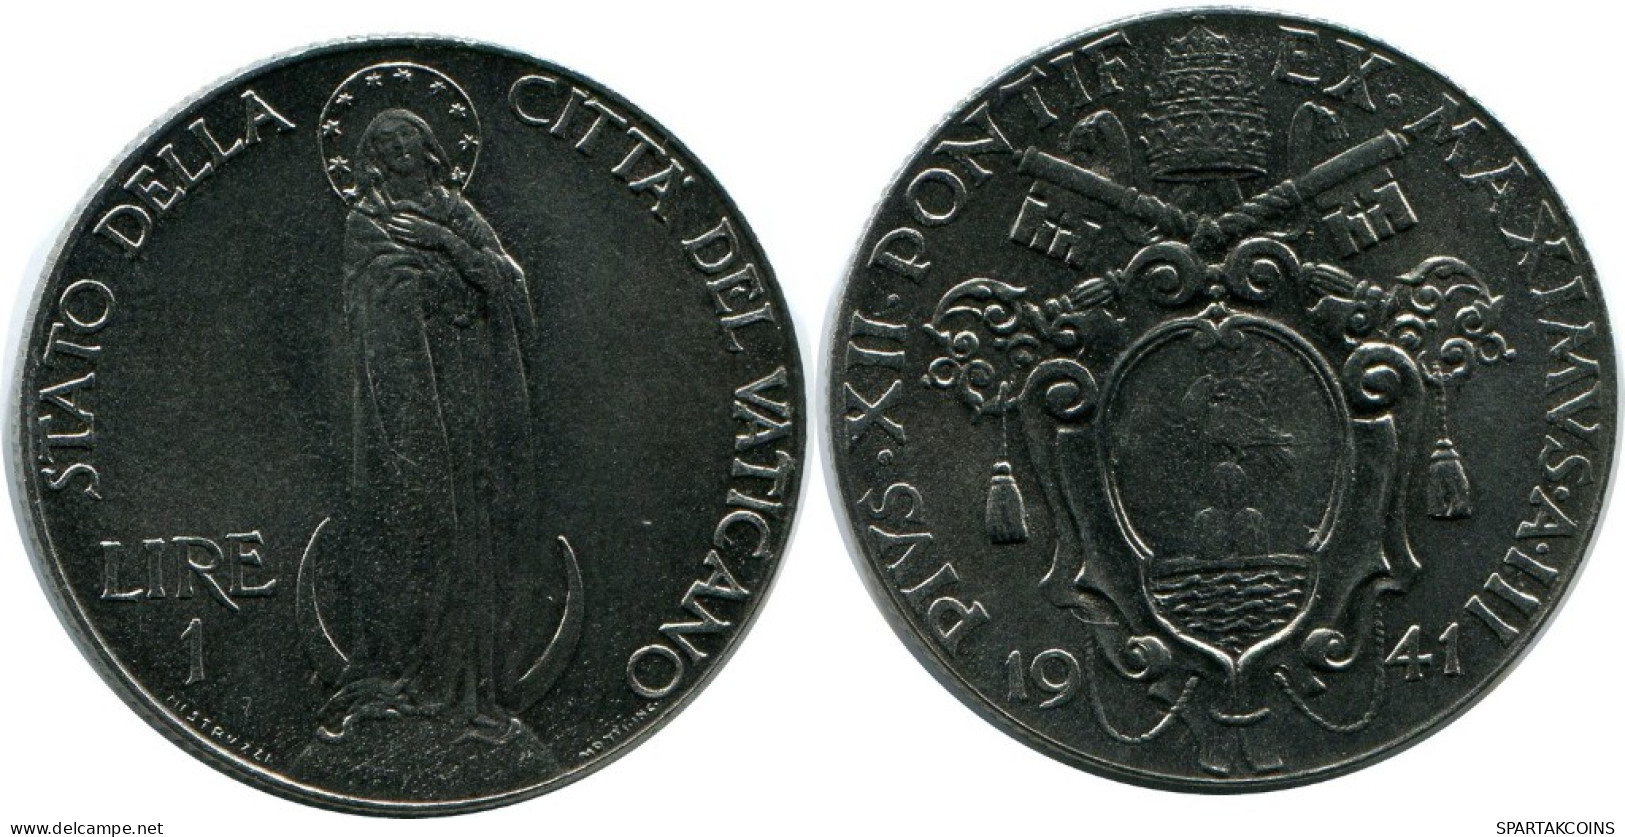 1 LIRE 1941 VATICAN Coin Pius XII (1939-1958) #AH314.16.U.A - Vaticano